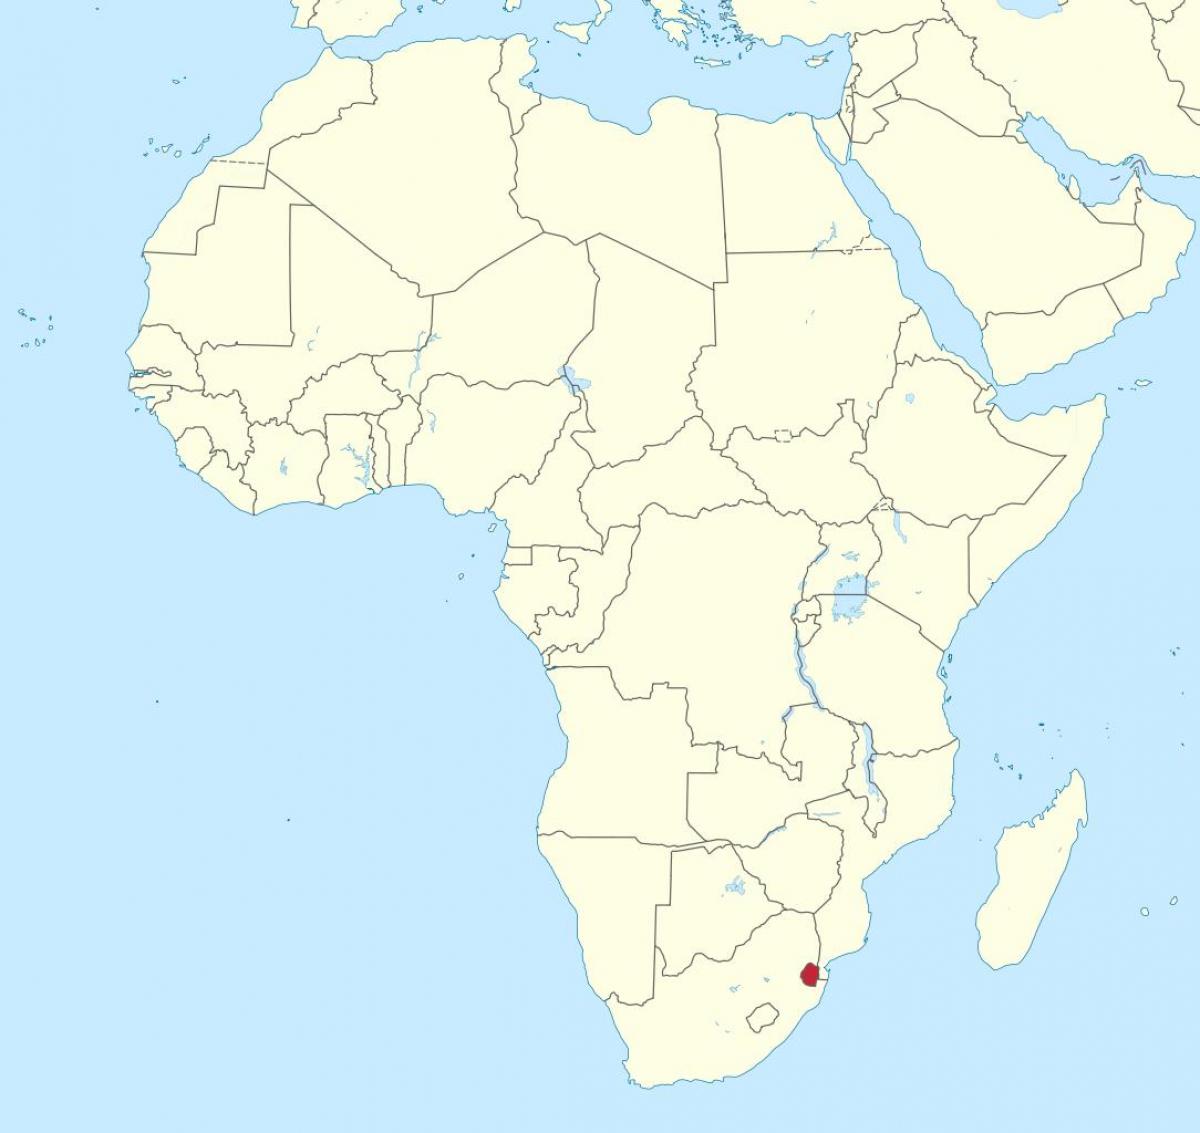 মানচিত্র আফ্রিকা, সোয়াজিল্যান্ড